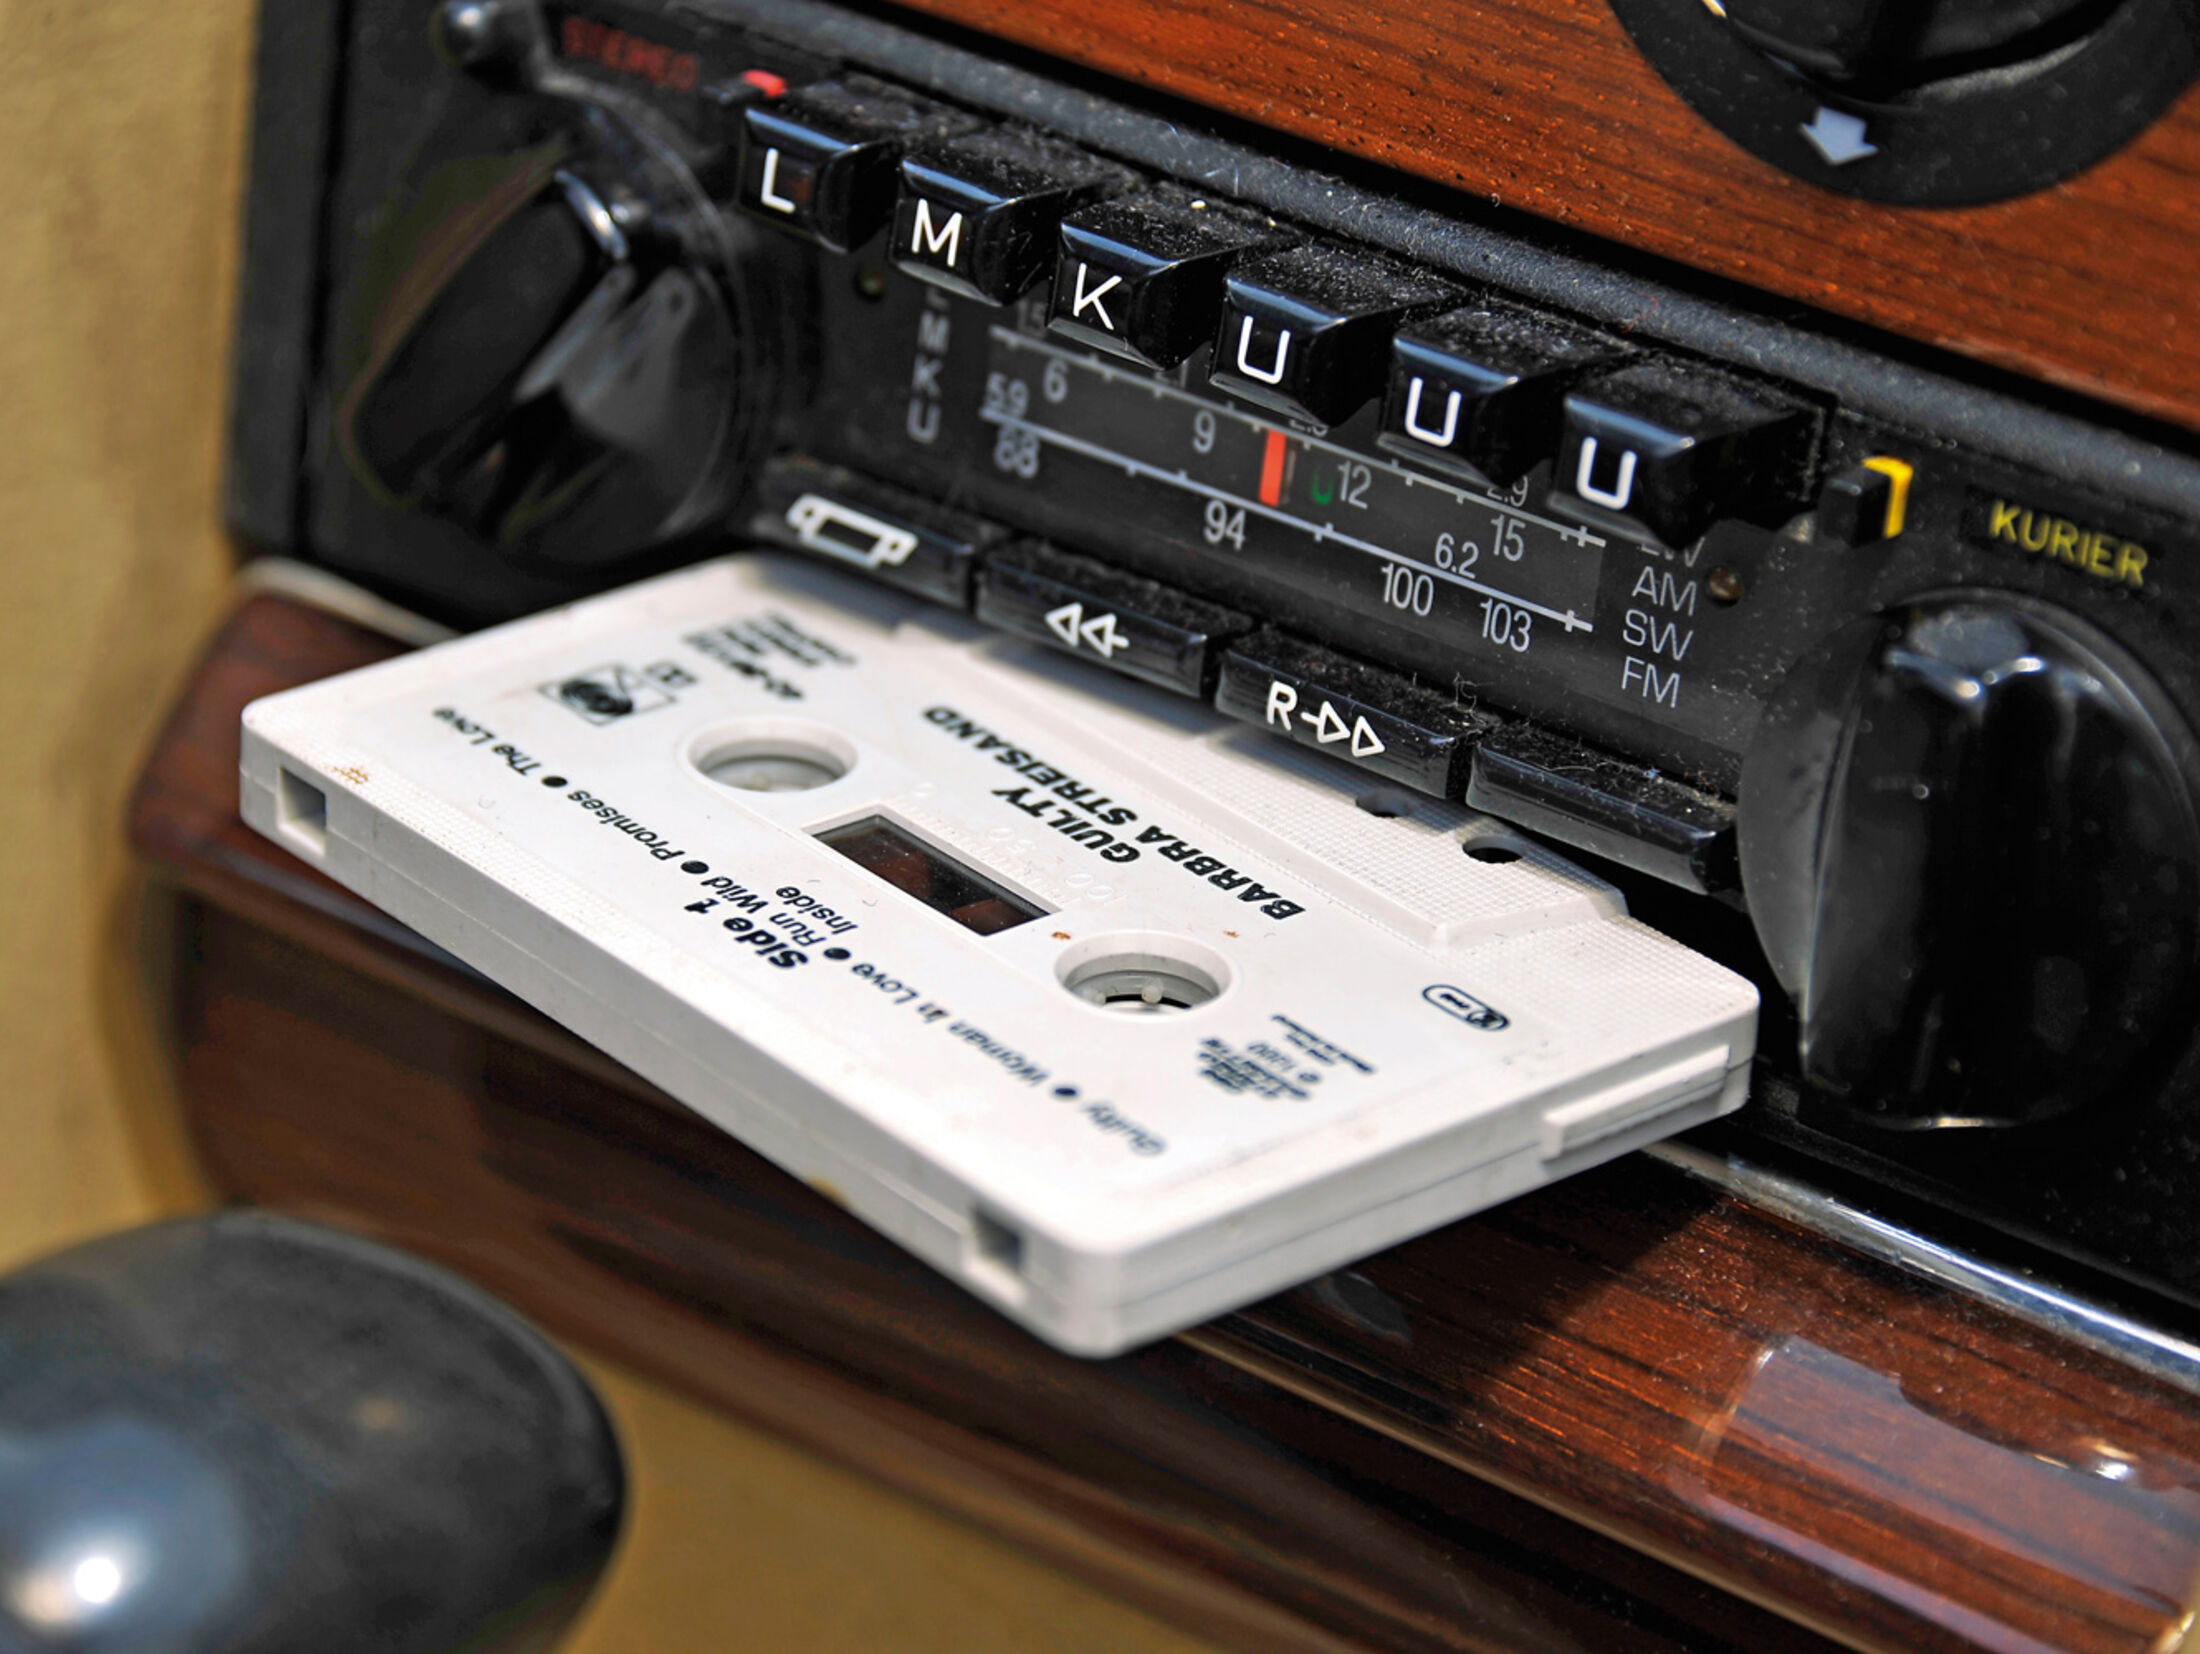 Musikkassetten im Auto: Glück auf Chromdioxid